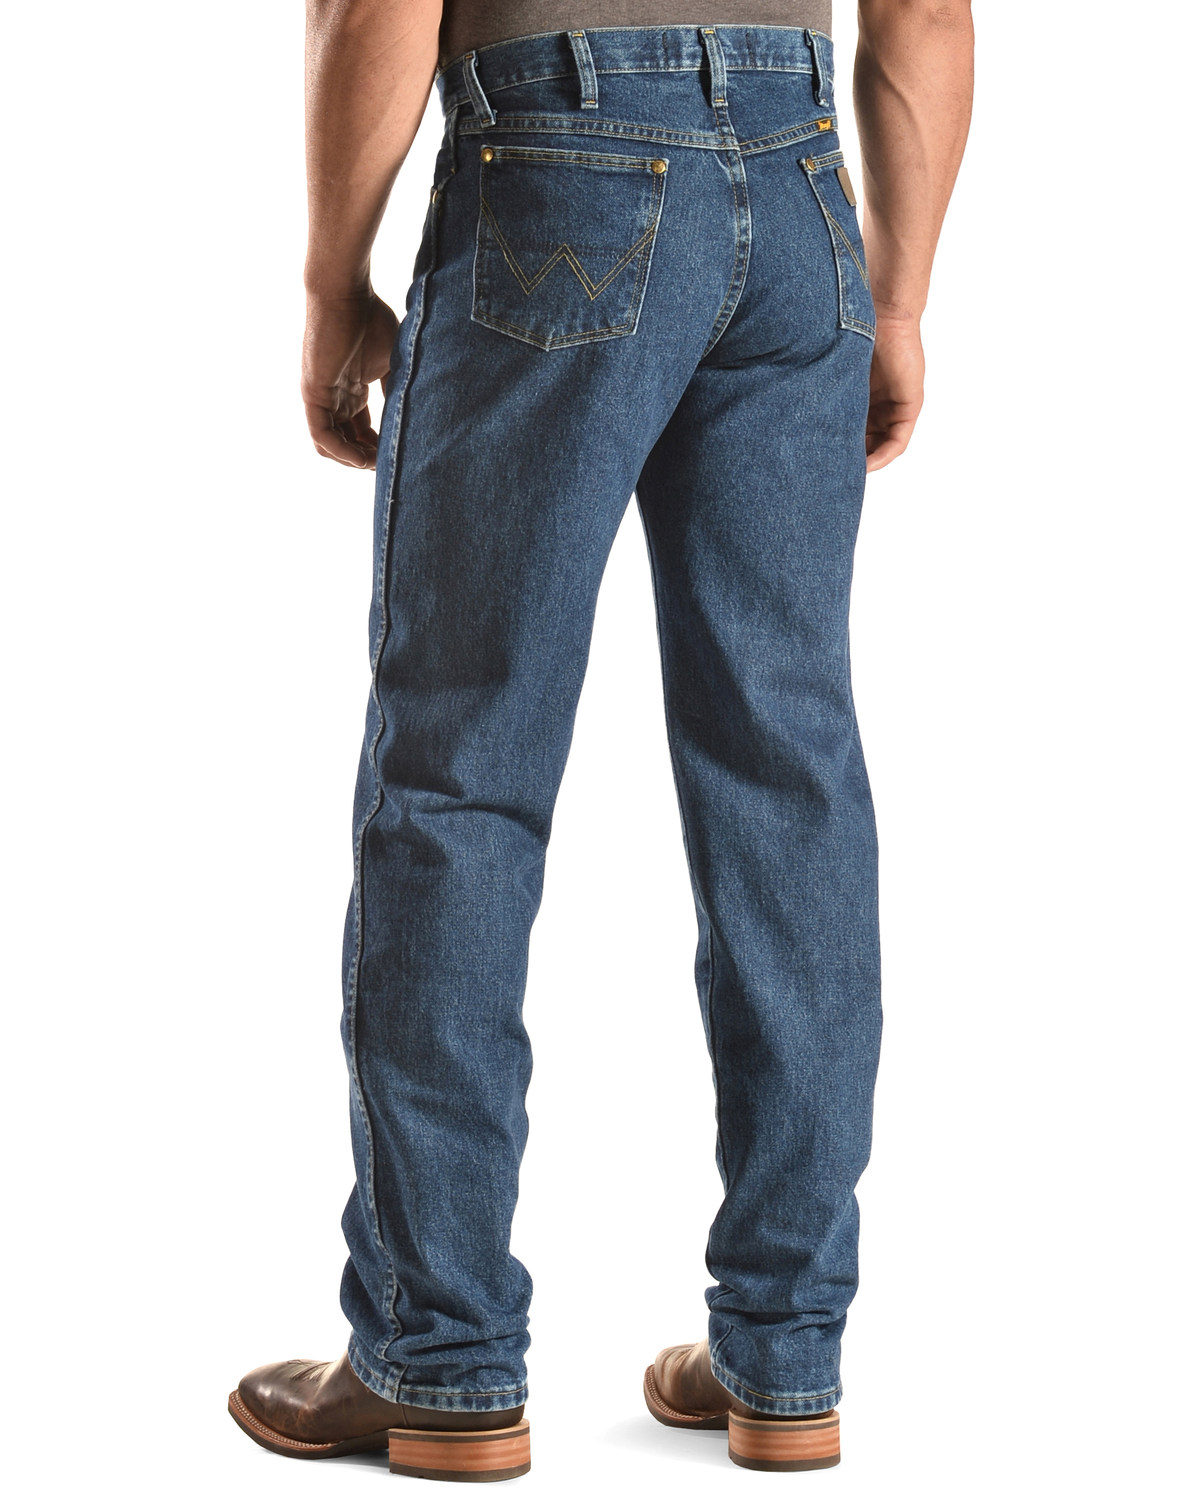 harrison ford wrangler jeans